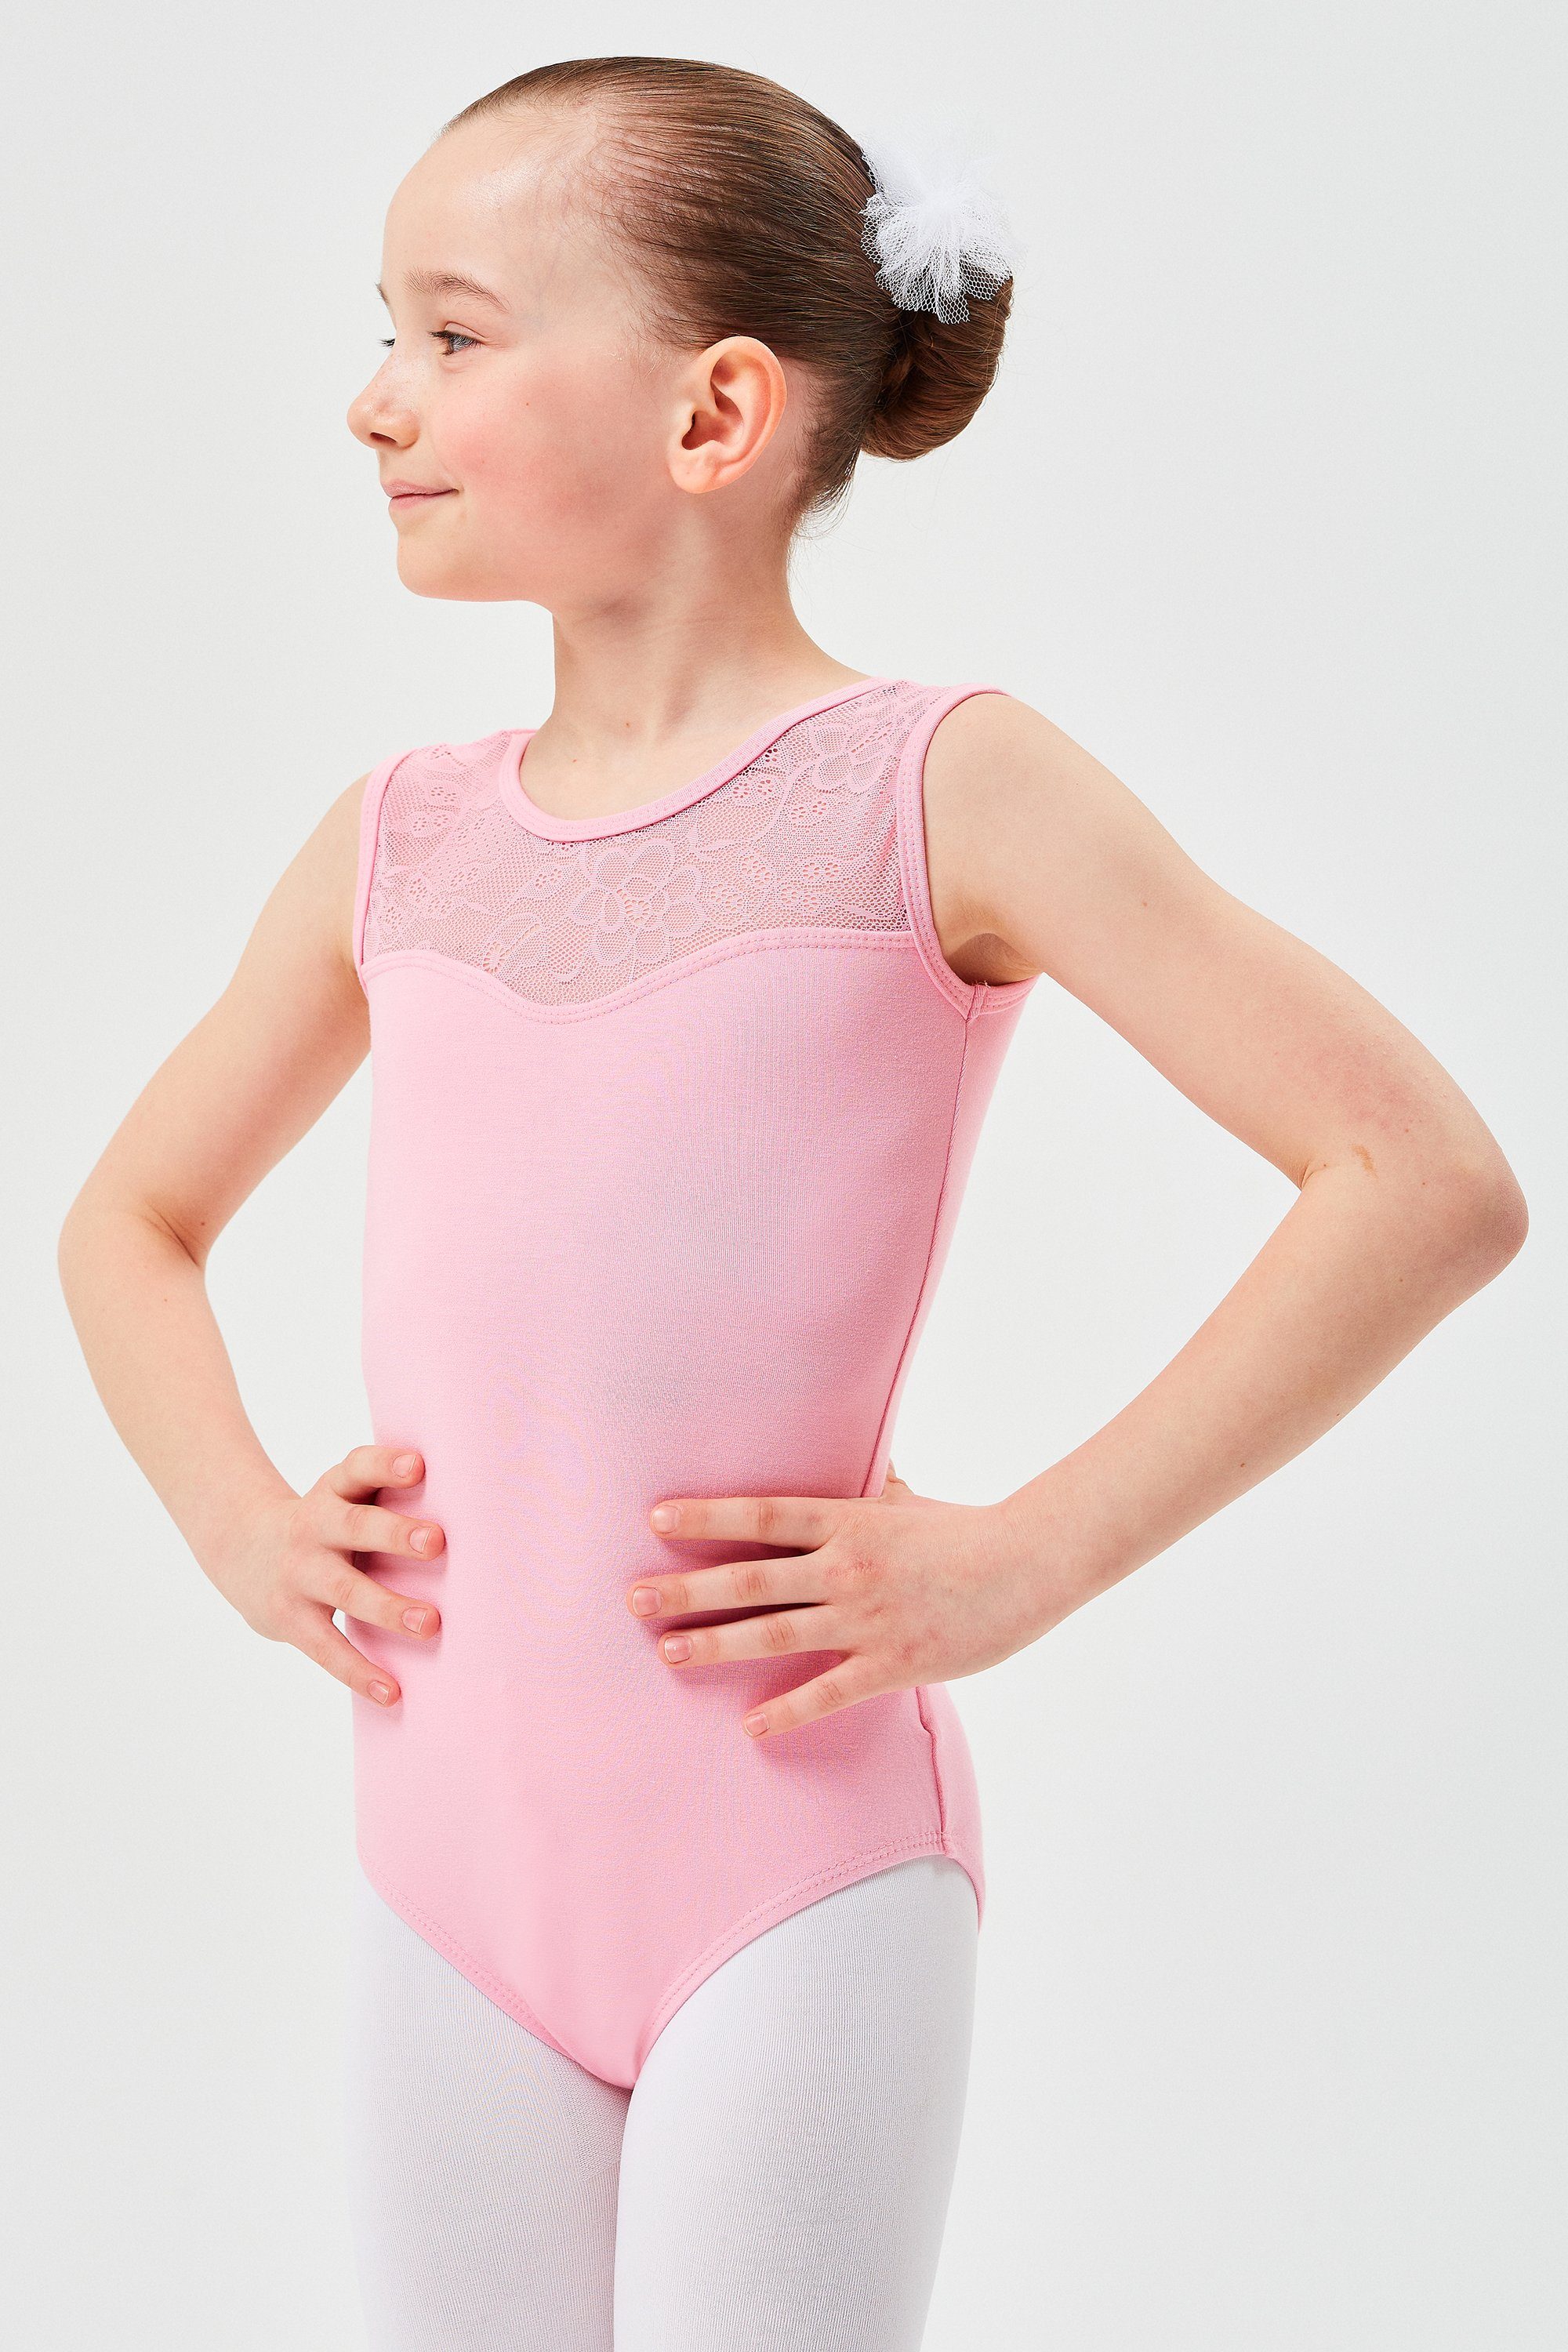 tanzmuster Body Ballett Baumwollmischgewebe Cora Trikot Spitzeneinsatz weichem ärmelloser rosa aus mit Ballettbody